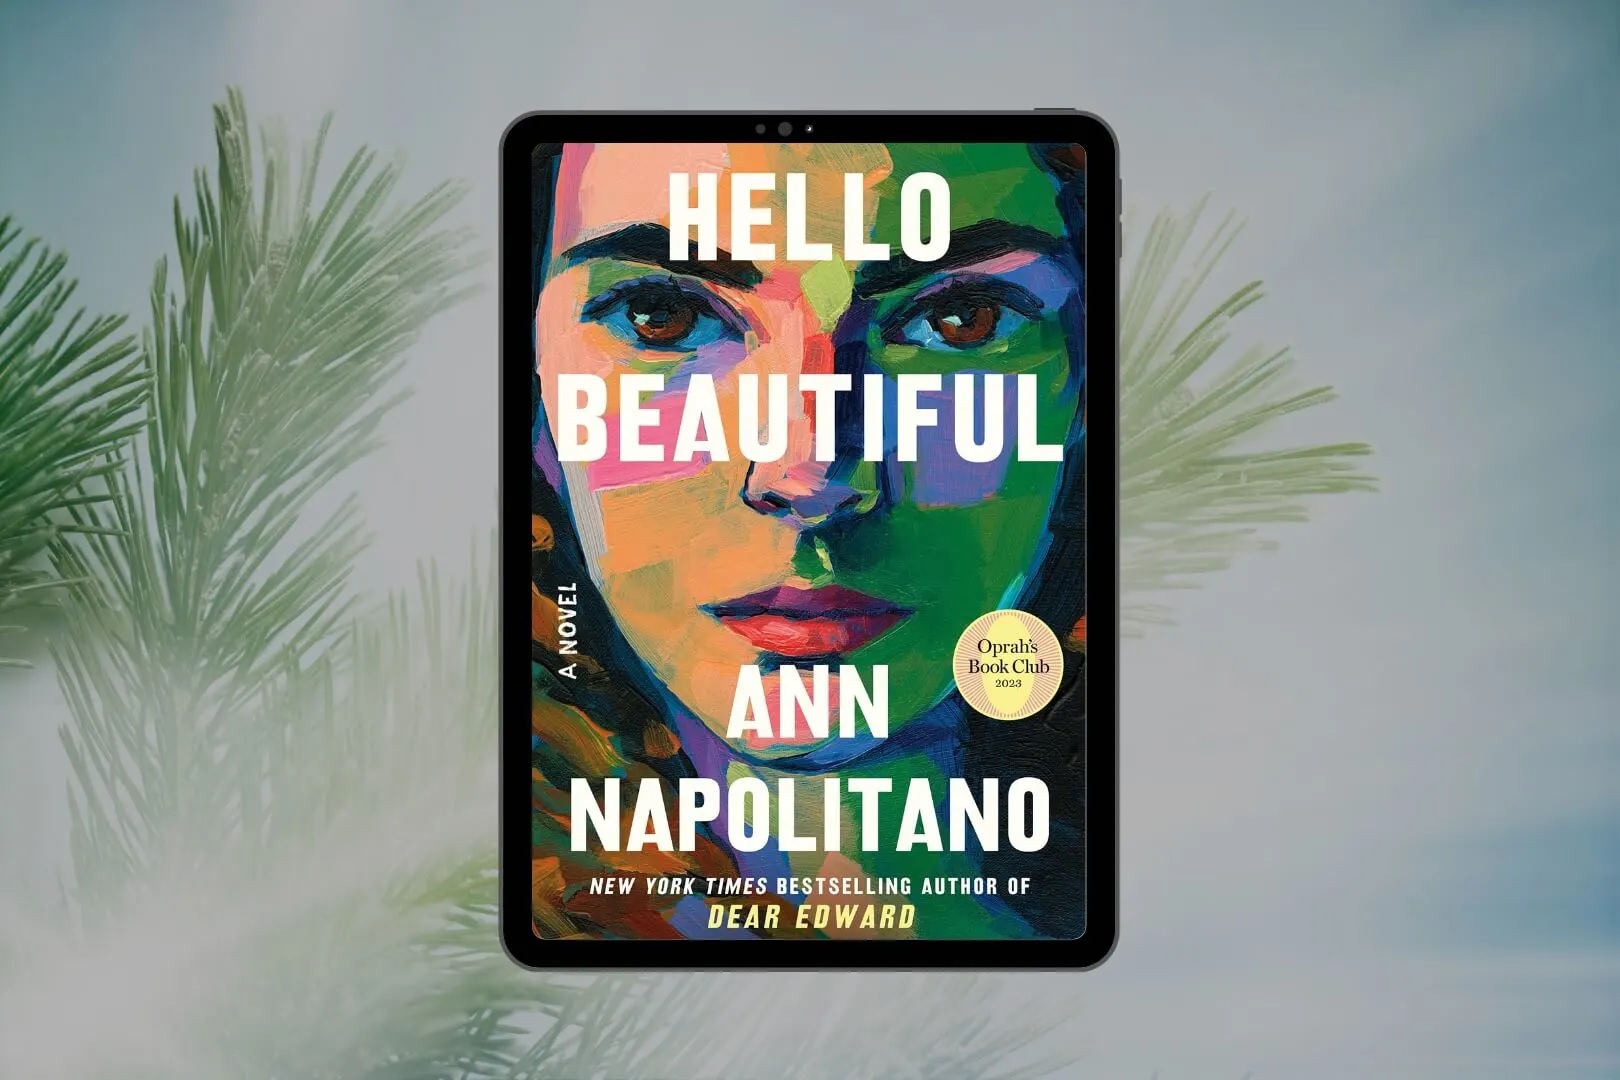 Ann Napolitano, “Hello beautiful”